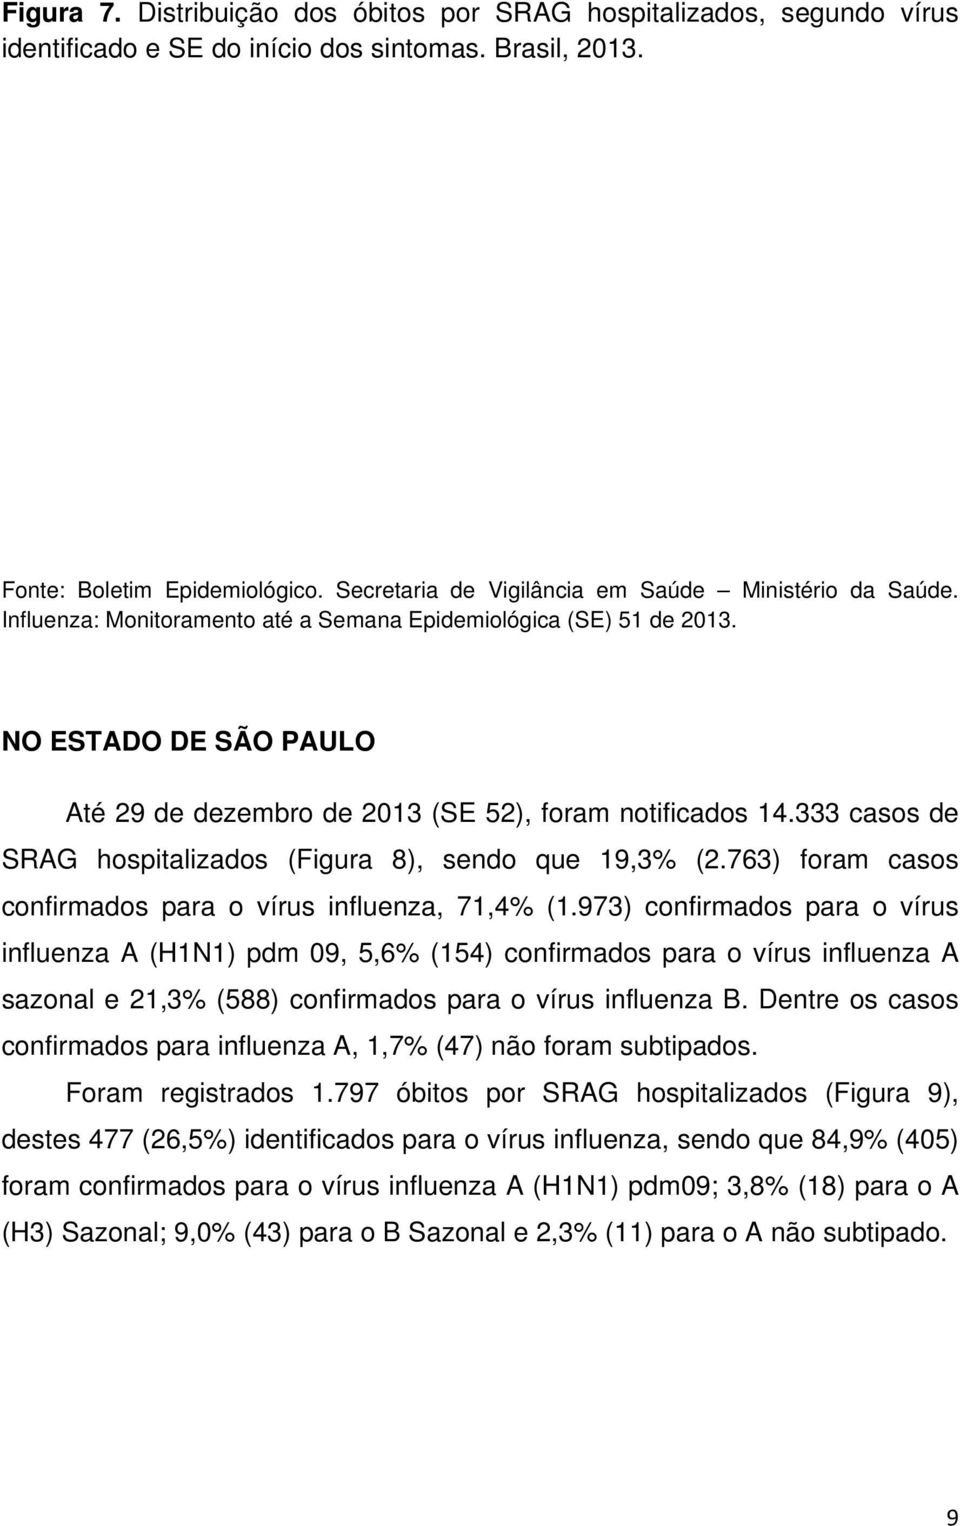 NO ESTADO DE SÃO PAULO Até 29 de dezembro de 2013 (SE 52), foram notificados 14.333 casos de SRAG hospitalizados (Figura 8), sendo que 19,3% (2.